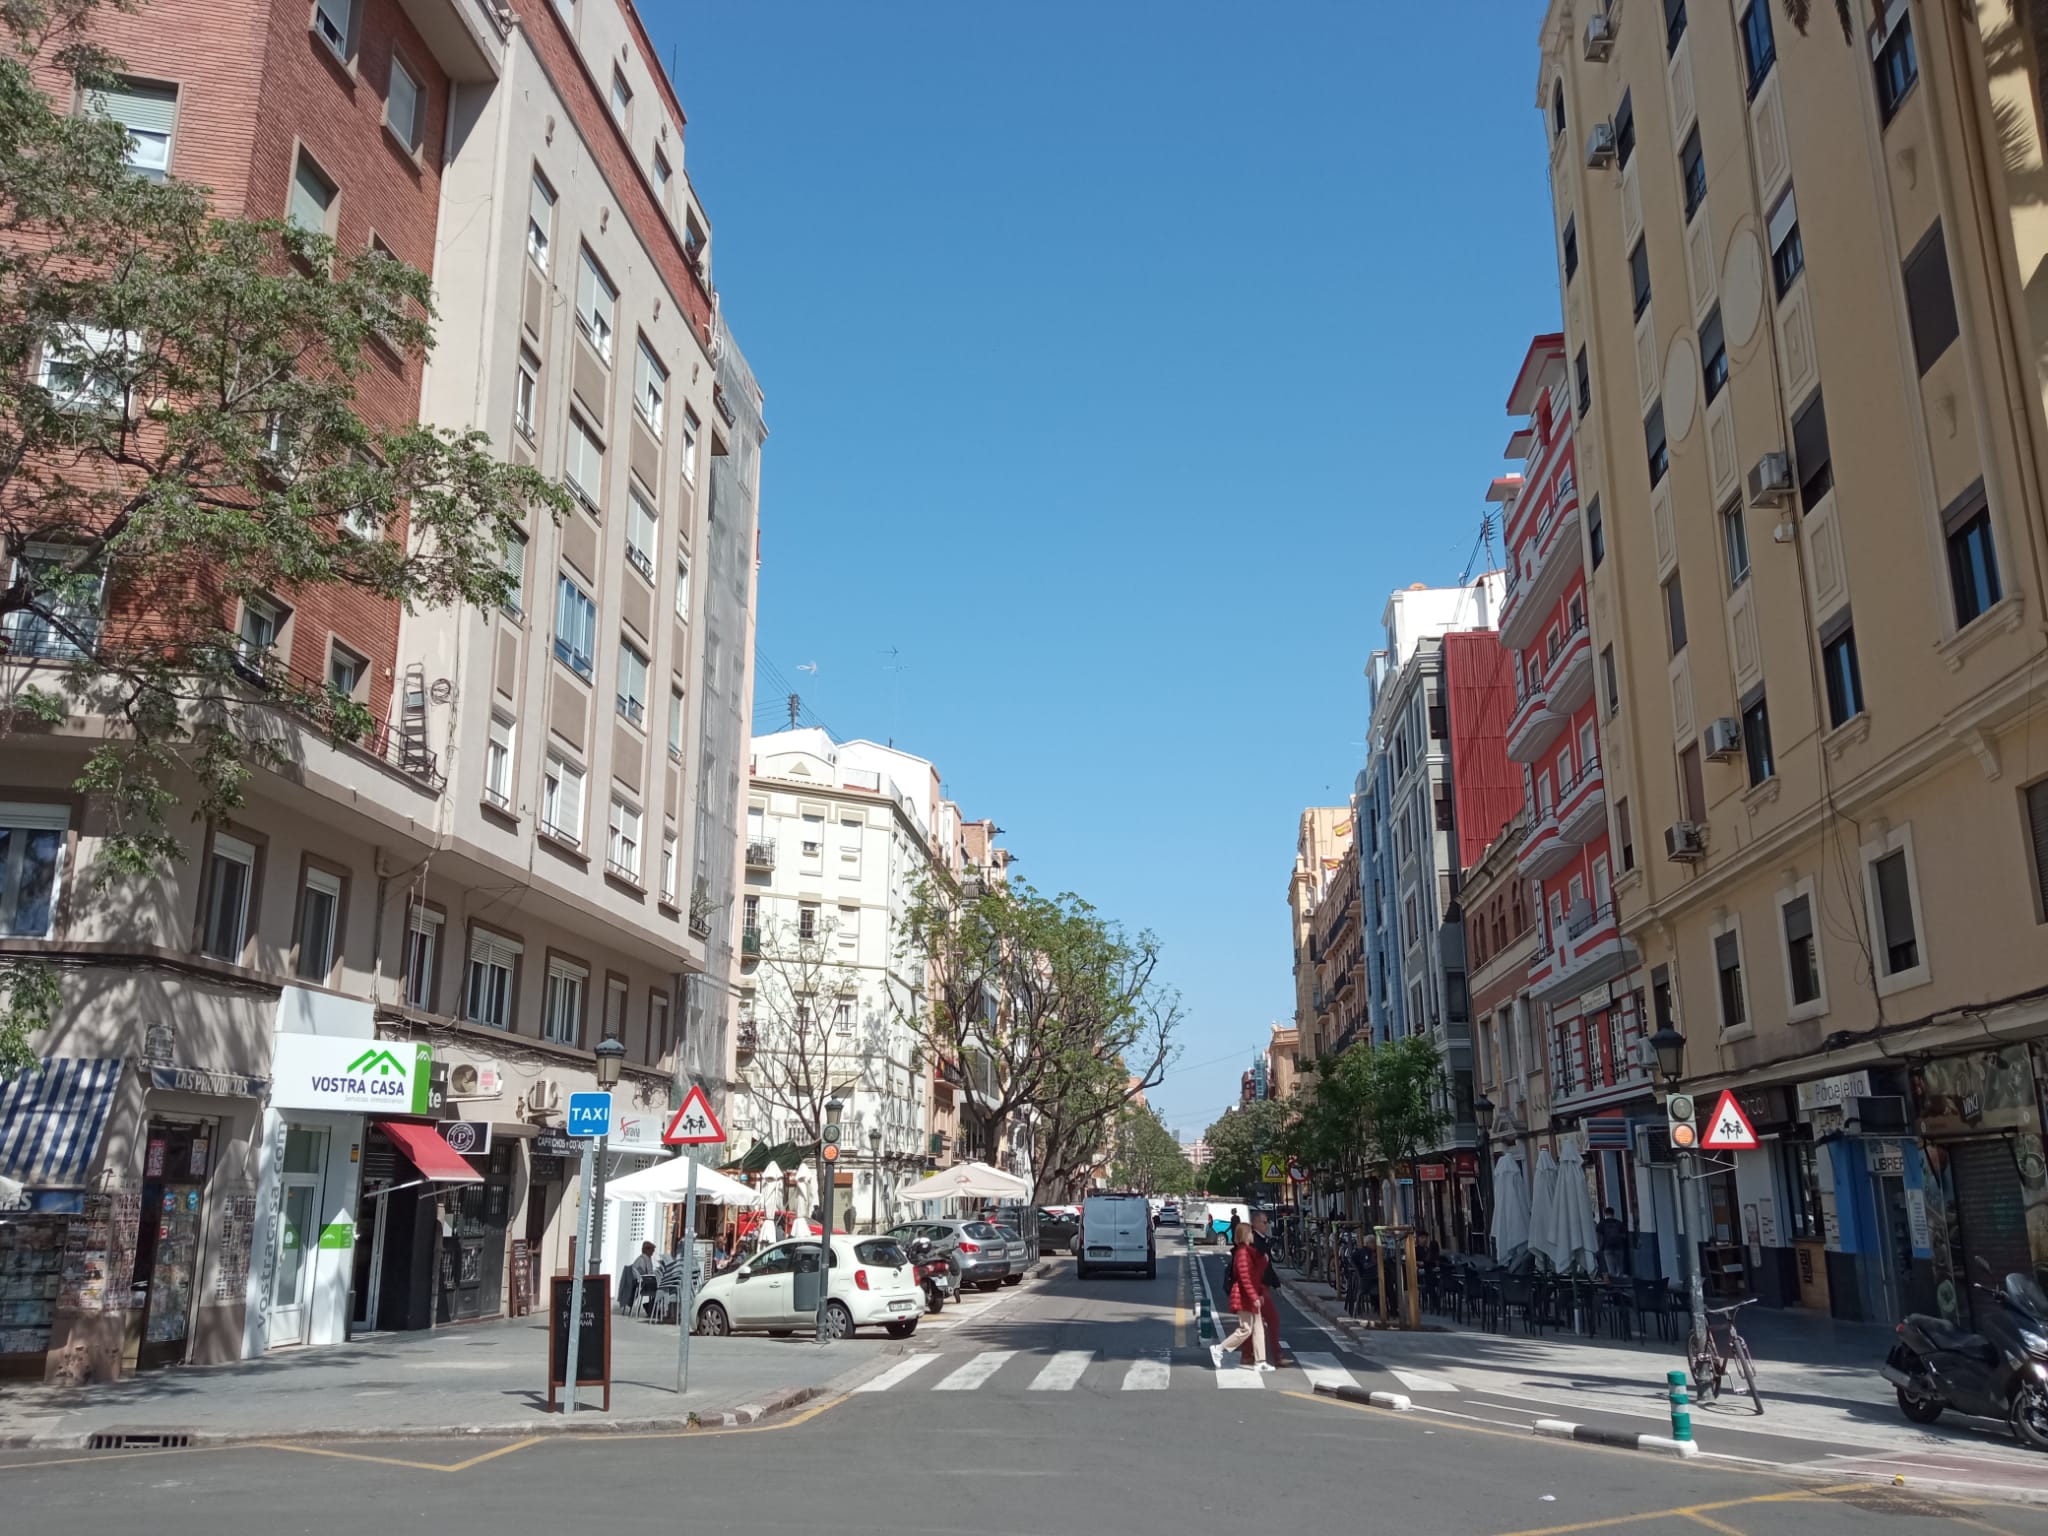 Este es el barrio más transitado de València